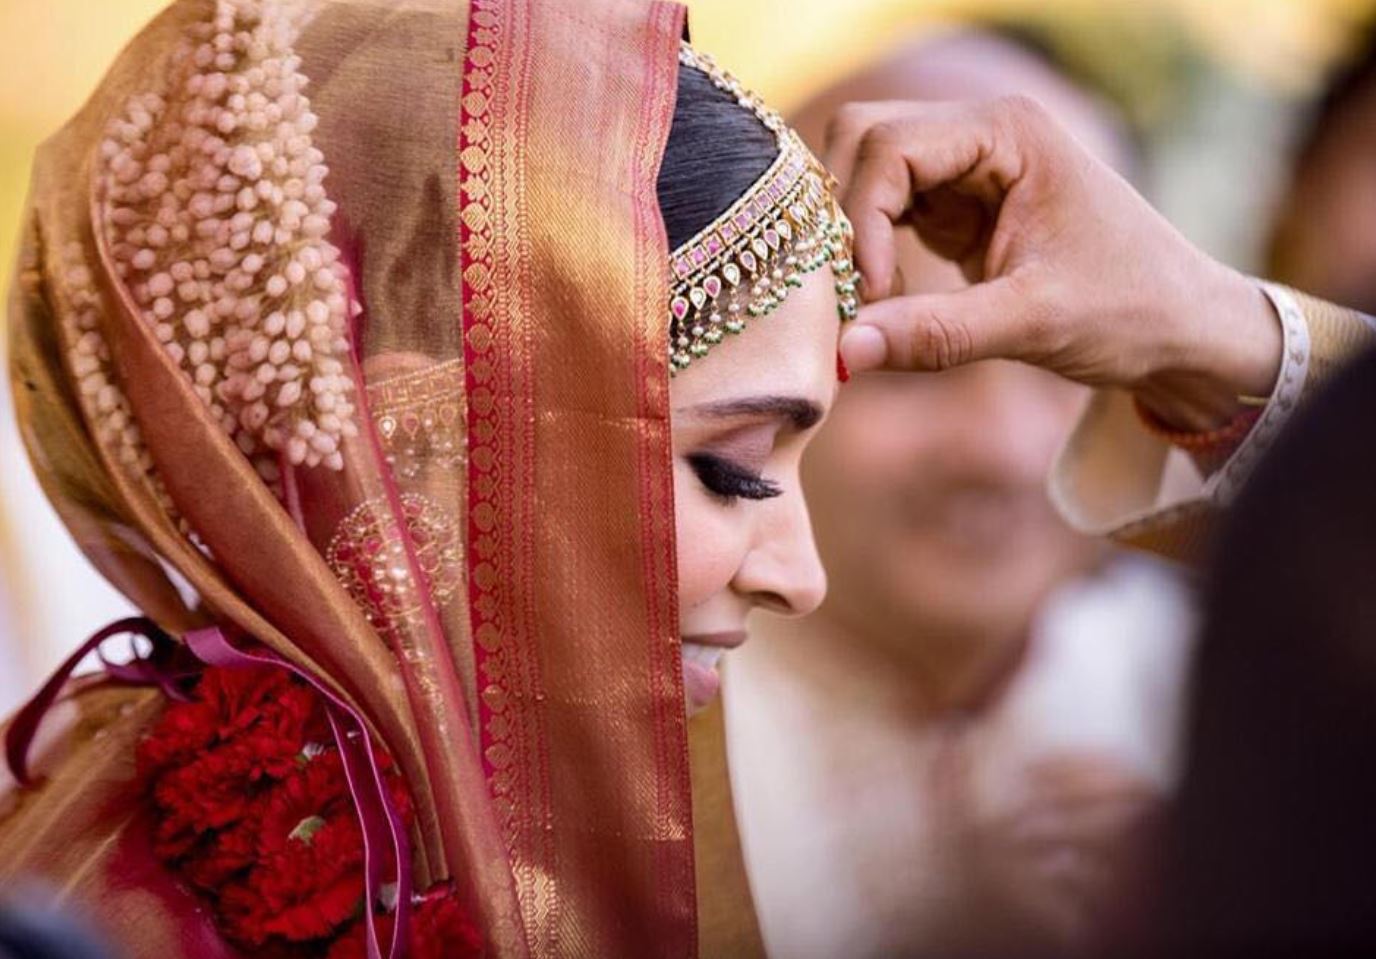 Deepika and Ranveer New Amazing Pictures of Wedding